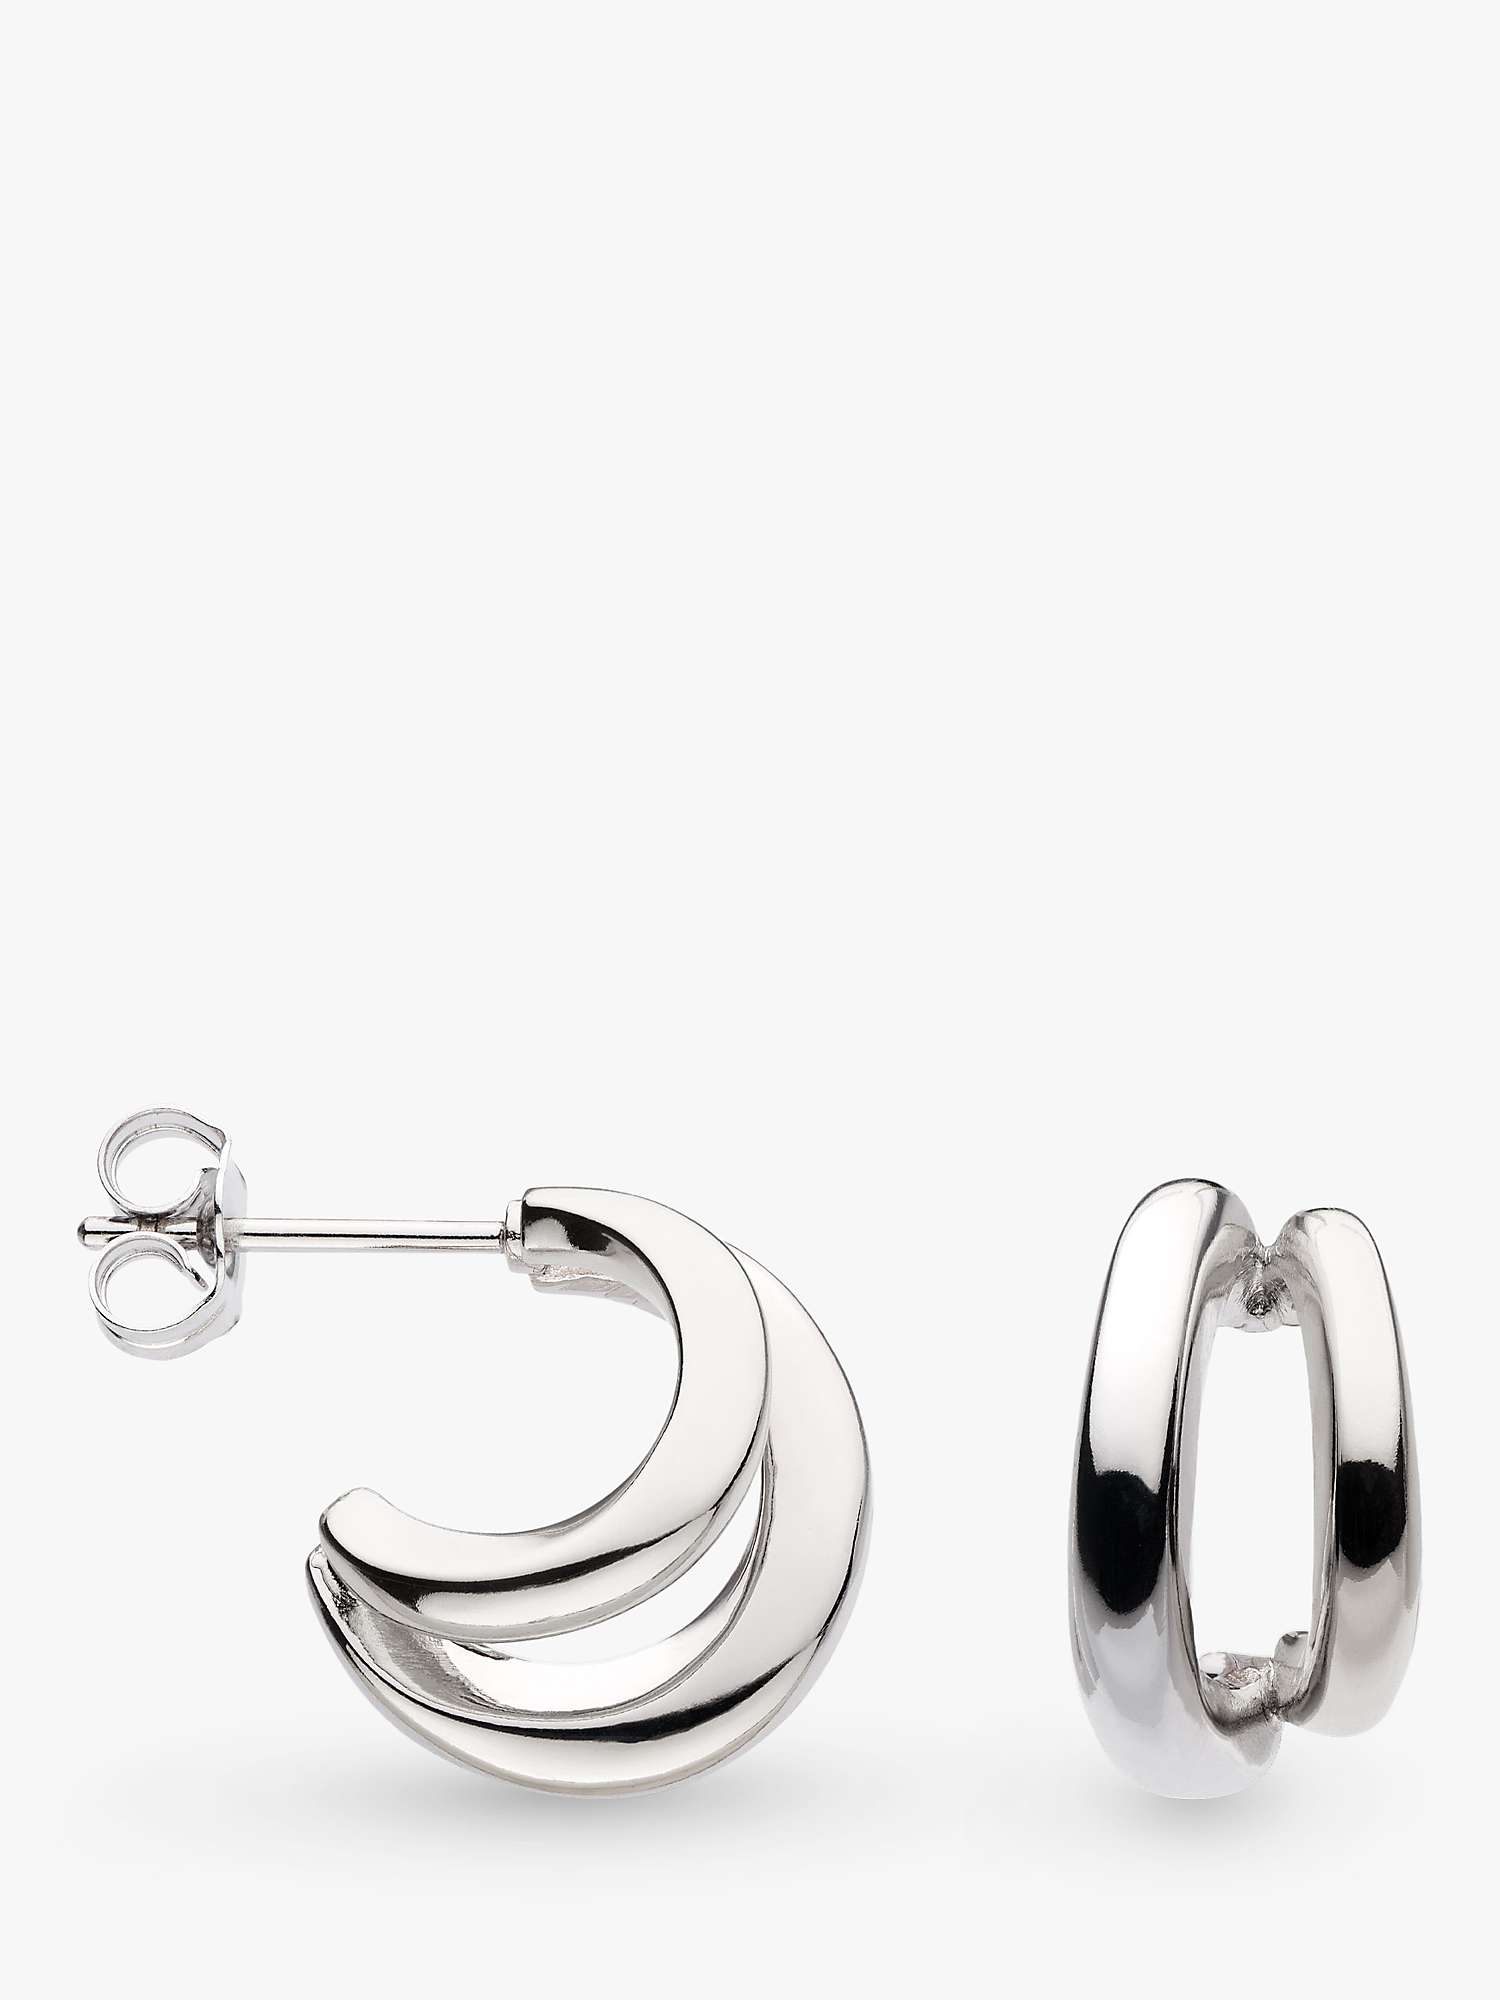 Buy Kit Heath Bevel Cirque Link Double Semi Hoop Earrings, Silver Online at johnlewis.com